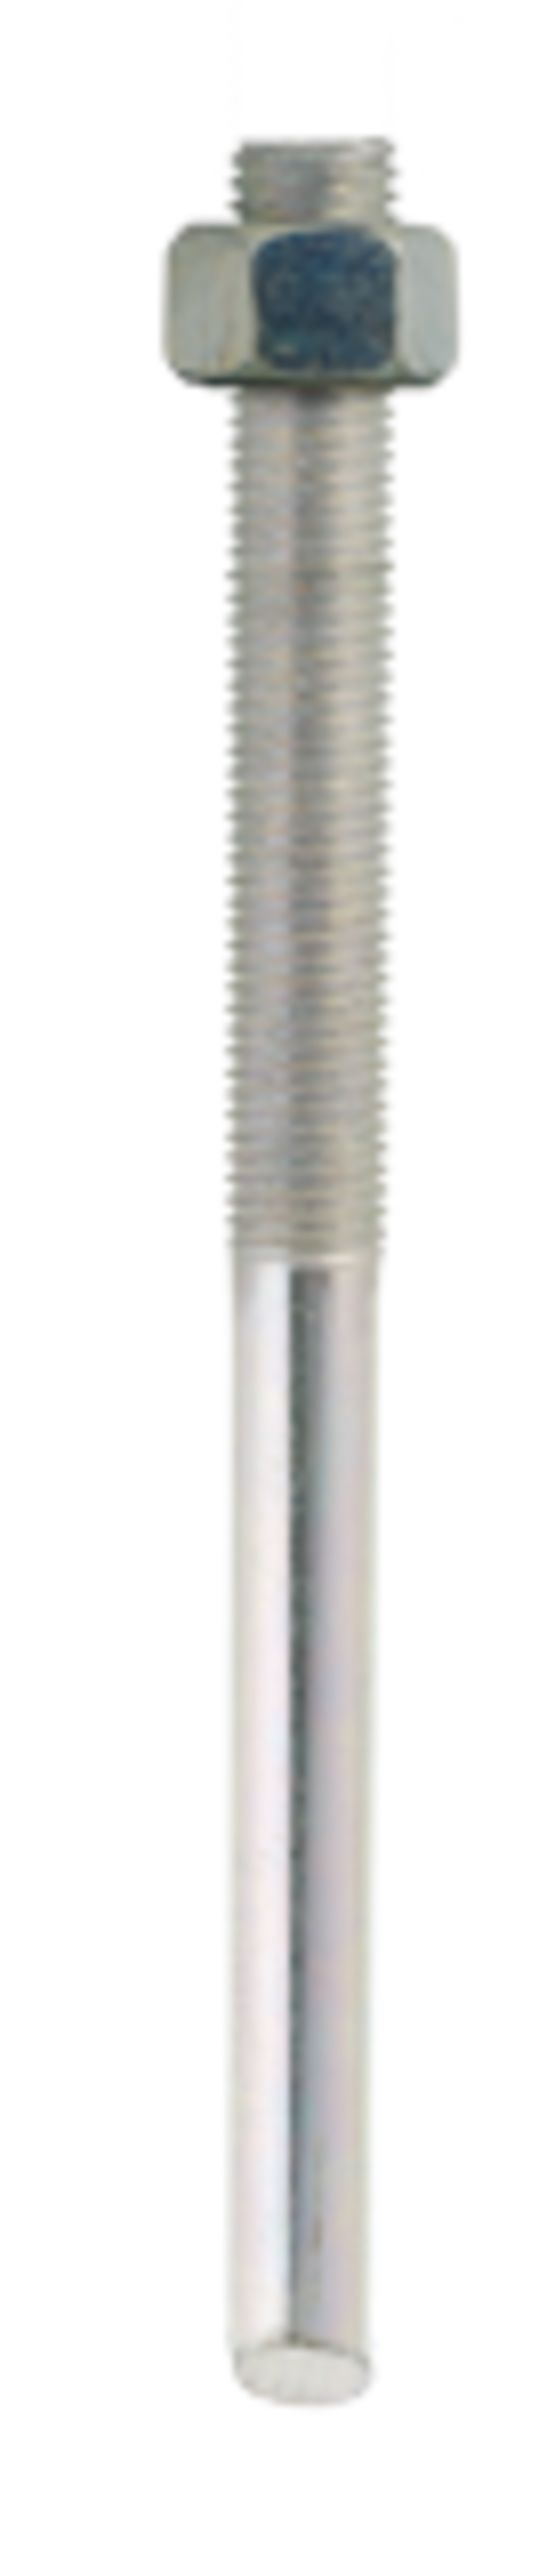  Tige rond à béton haute adhérence (HA) pour ancrage | FeE500 - Fixation (crochets, pattes, vis, etc.)